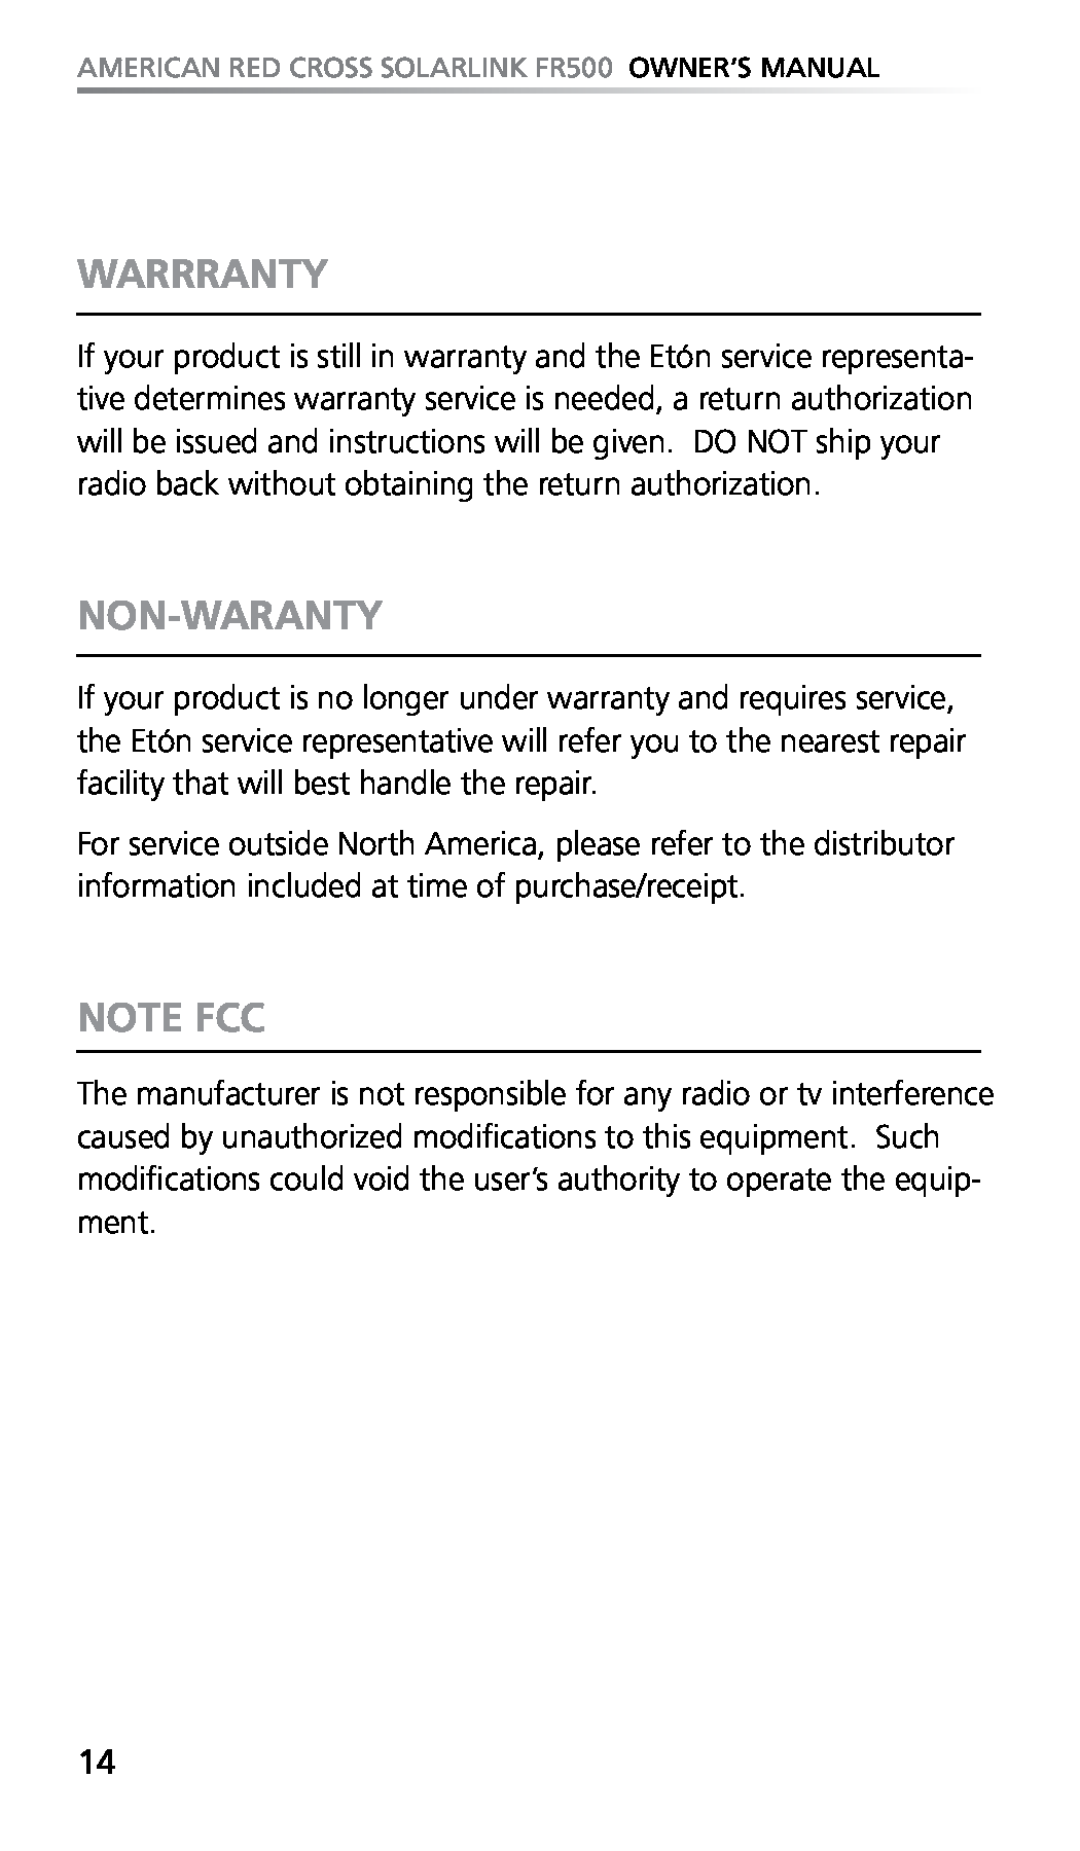 Eton FR500 owner manual Warrranty, Non-Waranty, Note FCC 